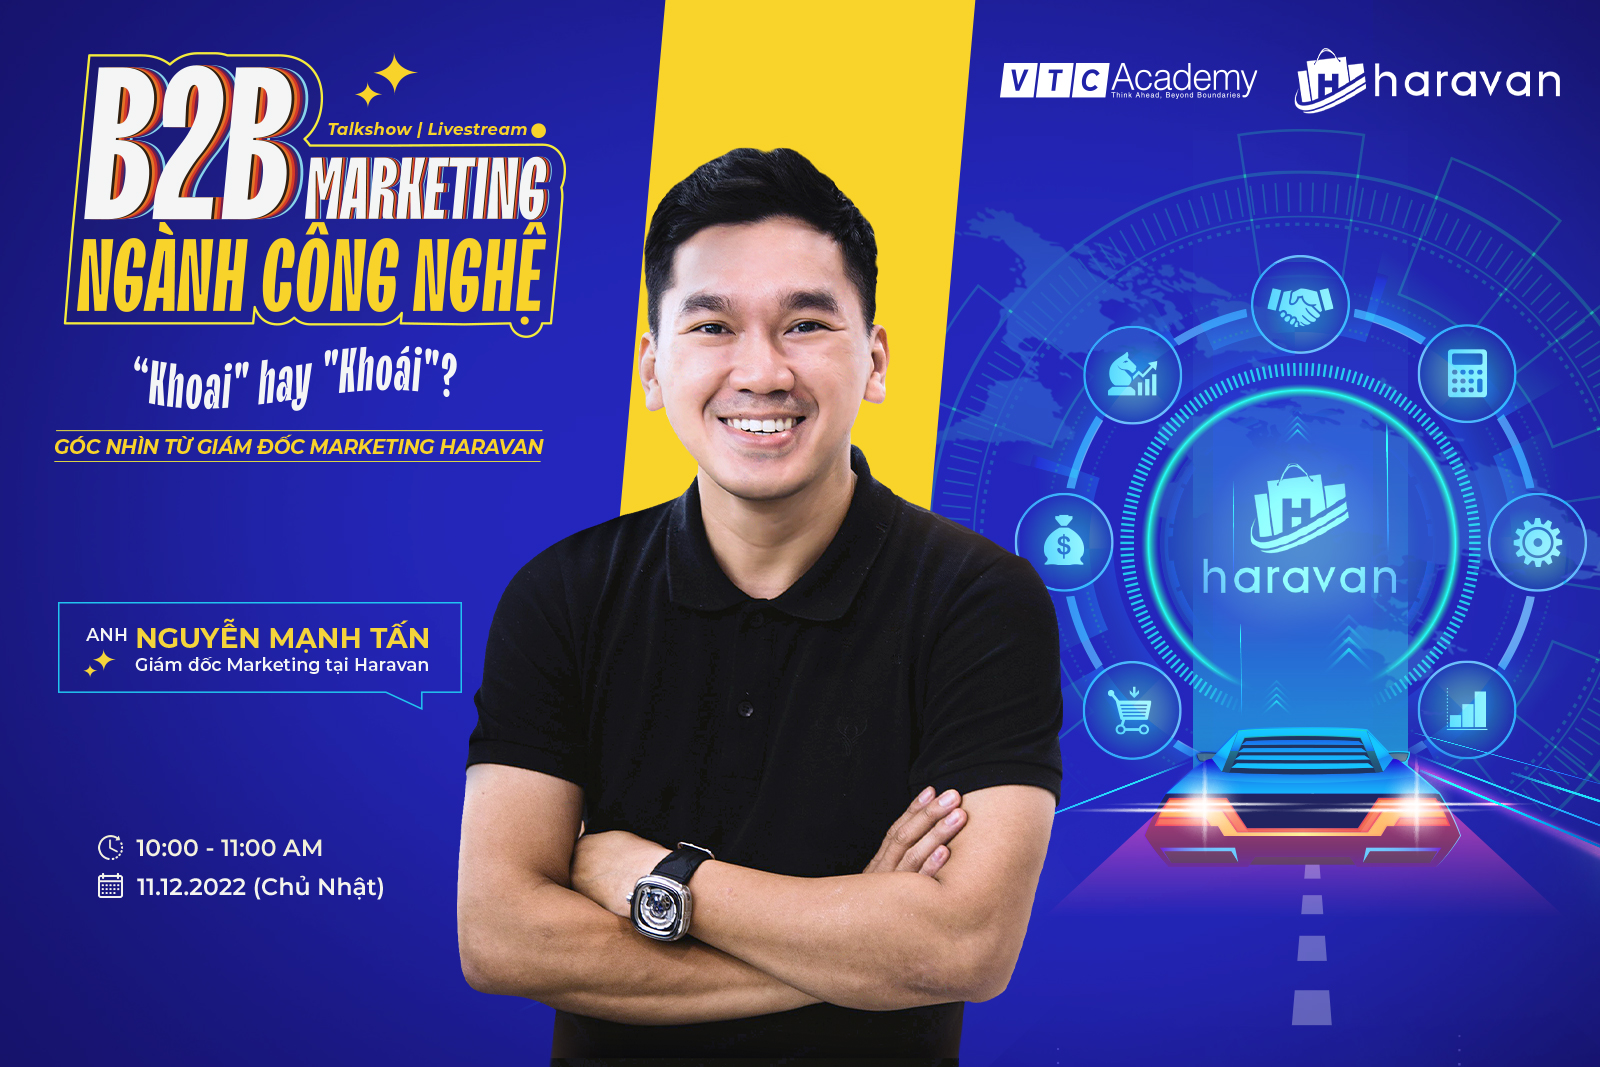 Talkshow trực tuyến Marketing B2B ngành công nghệ: “Khoai” hay “Khoái” | Góc nhìn từ Giám đốc Marketing Haravan